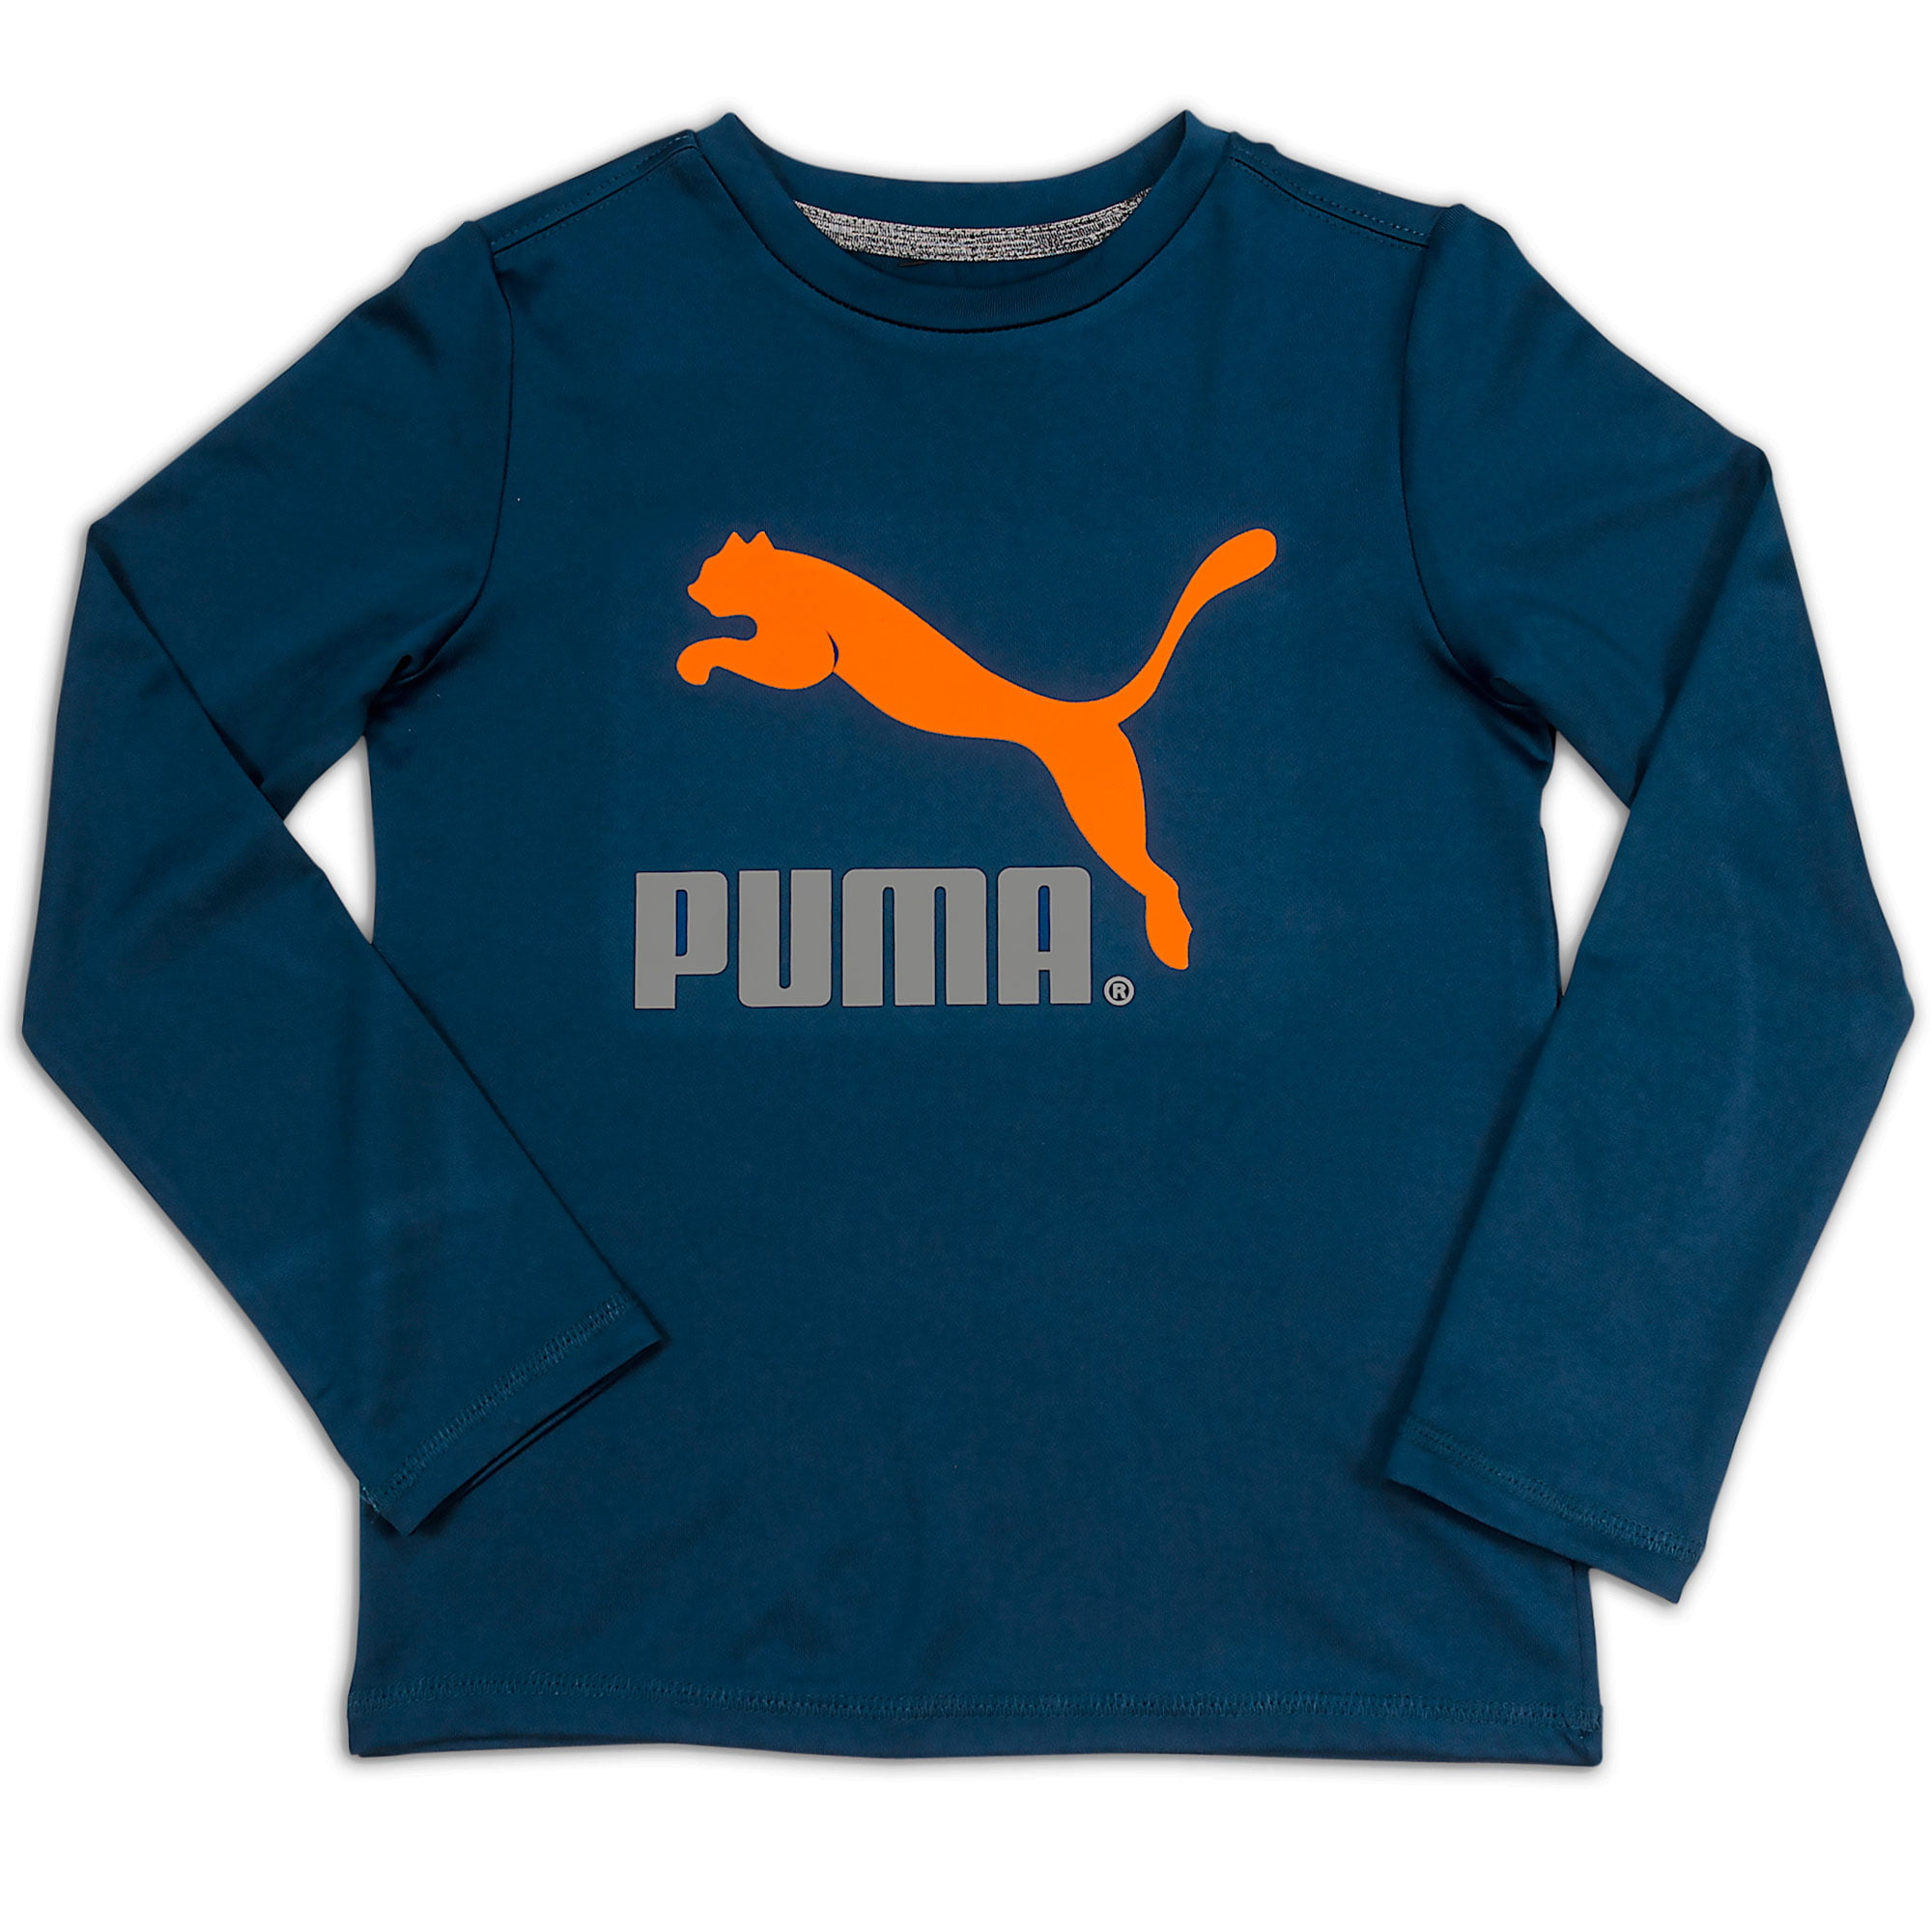 blue and orange puma shirt